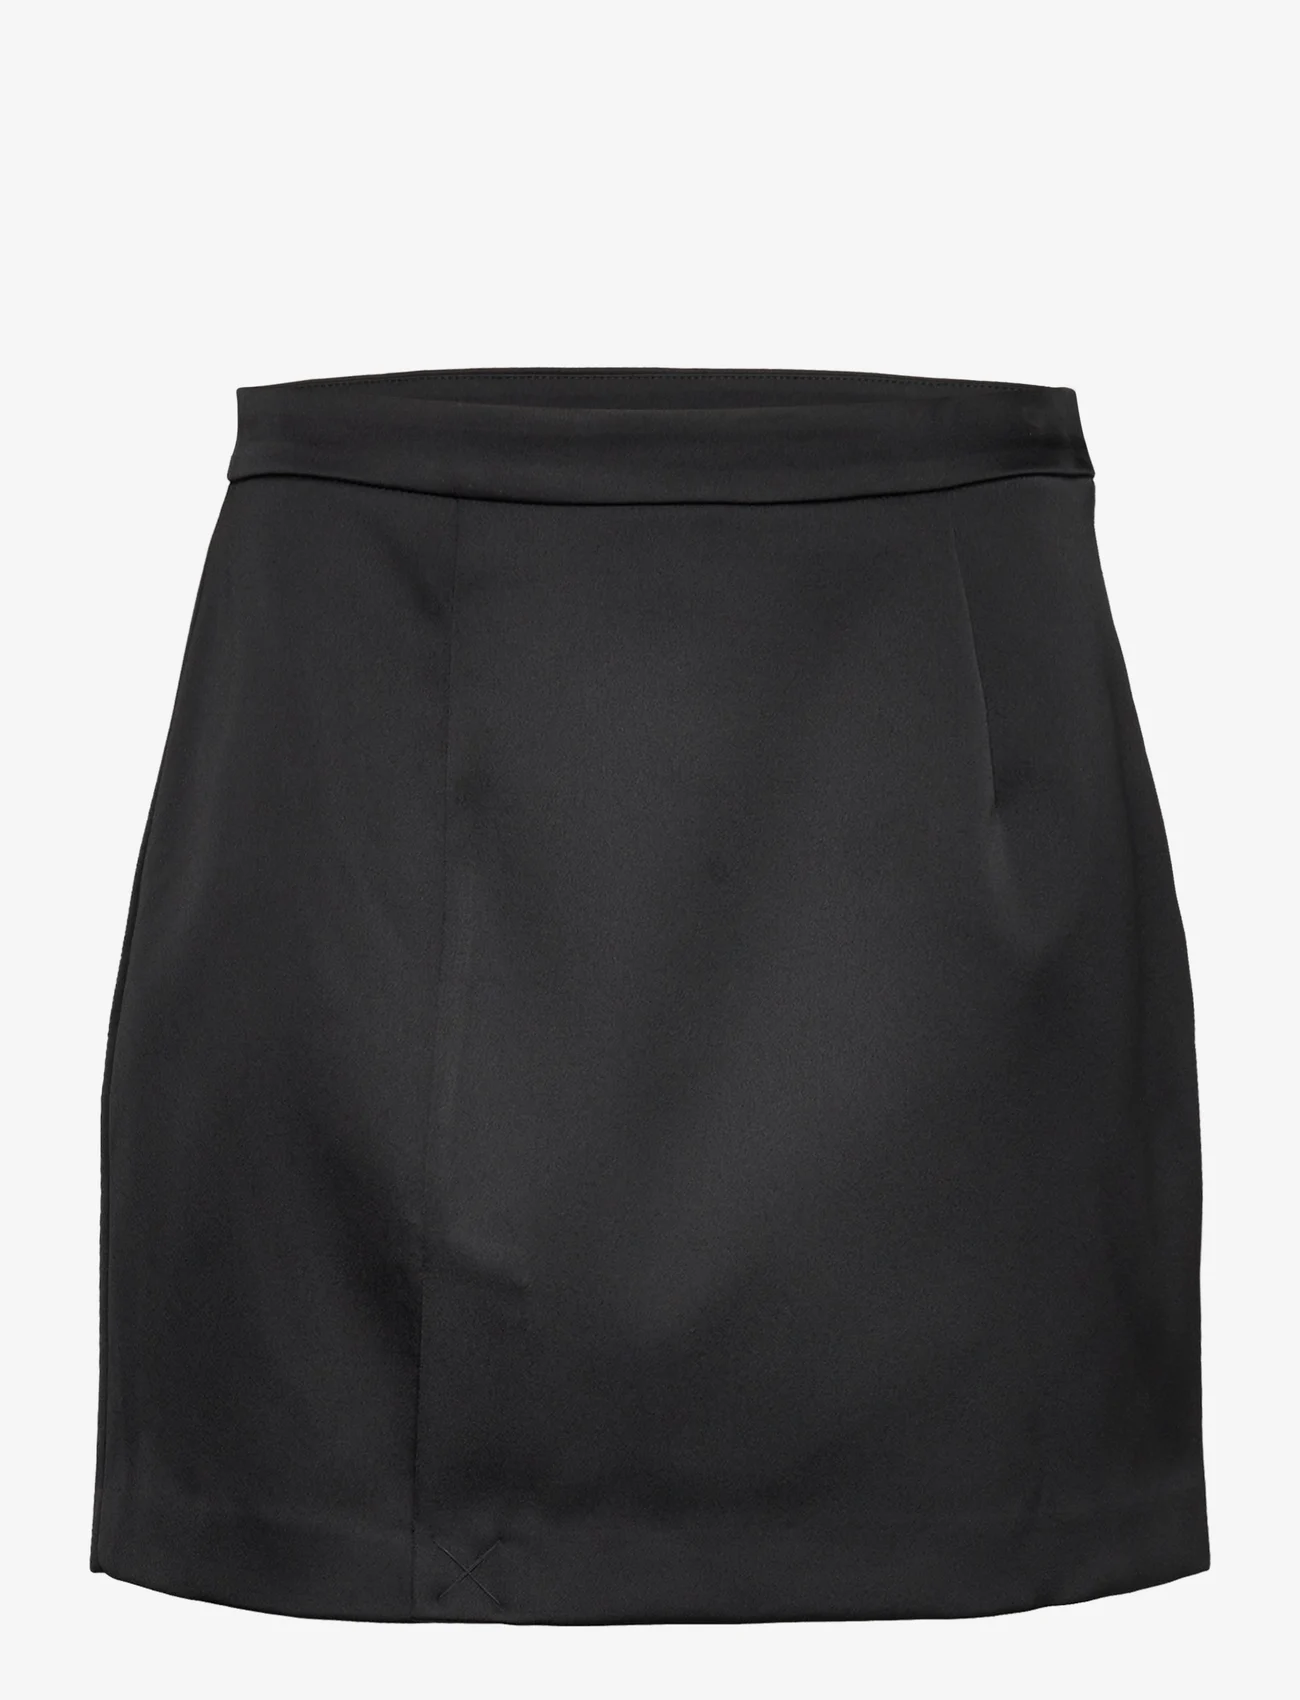 Cras - Samycras Skirt - short skirts - black - 0